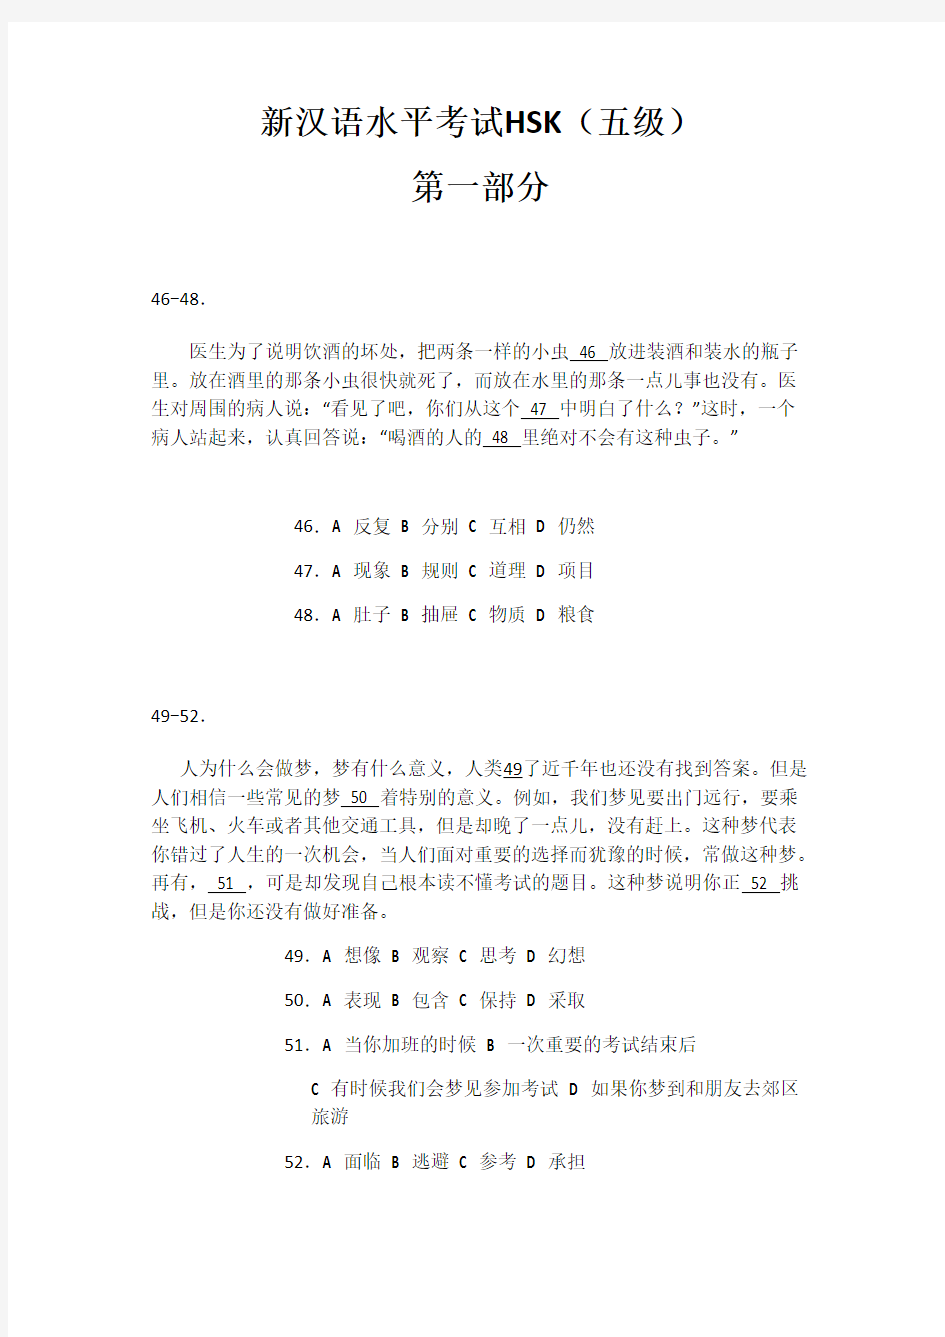 (完整版)汉语水平考试五级HSK真题